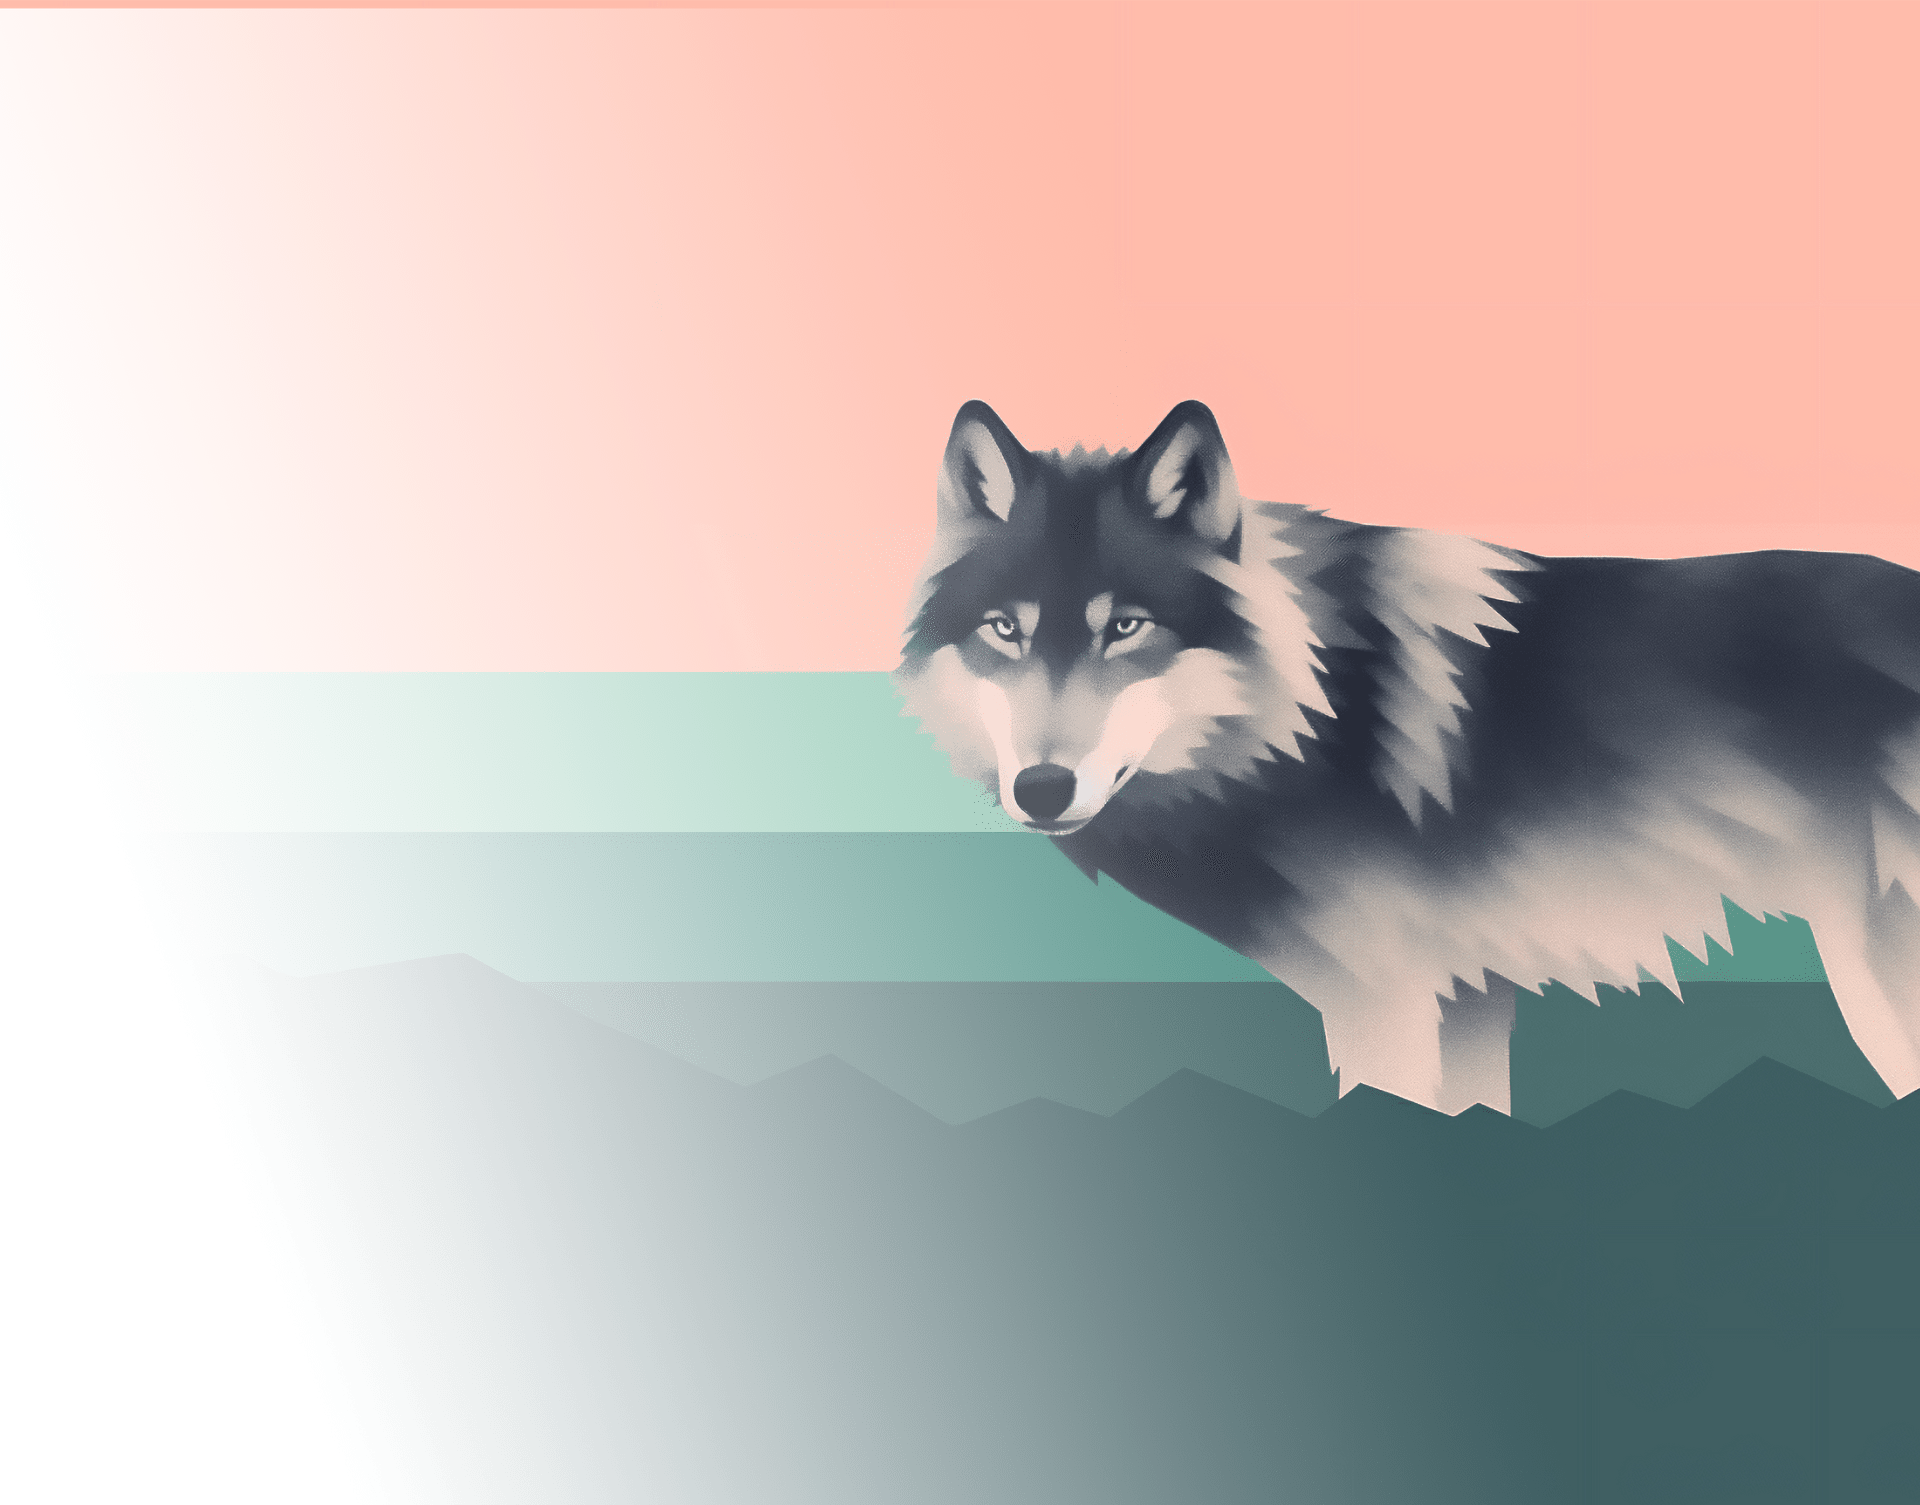 Artistieke weergave van een wolf tegen een geometrische achtergrond met pasteltinten.